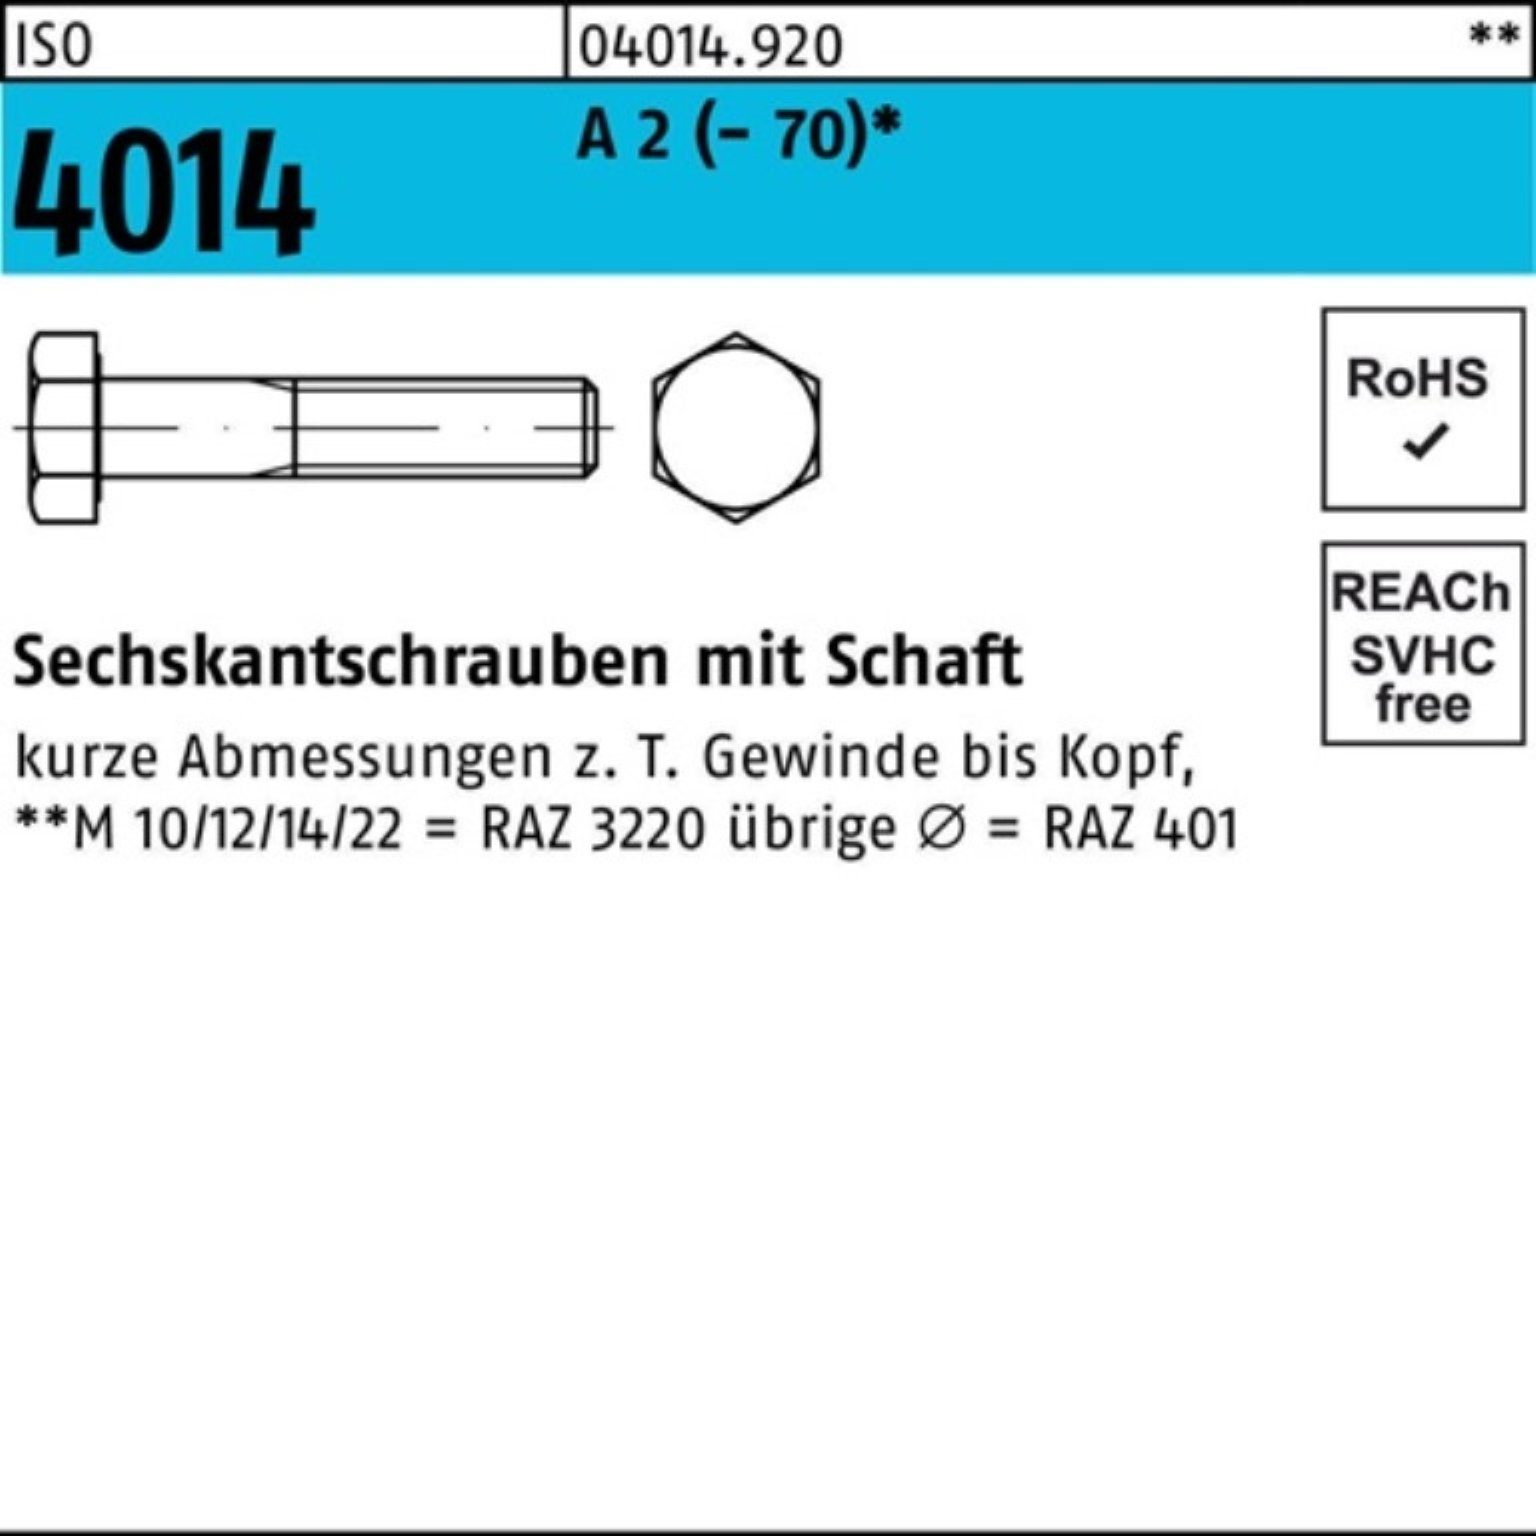 Pack Schaft 4014 Sechskantschraube M8x 110 ISO 100er 2 A Bufab (70) 50 Sechskantschraube St